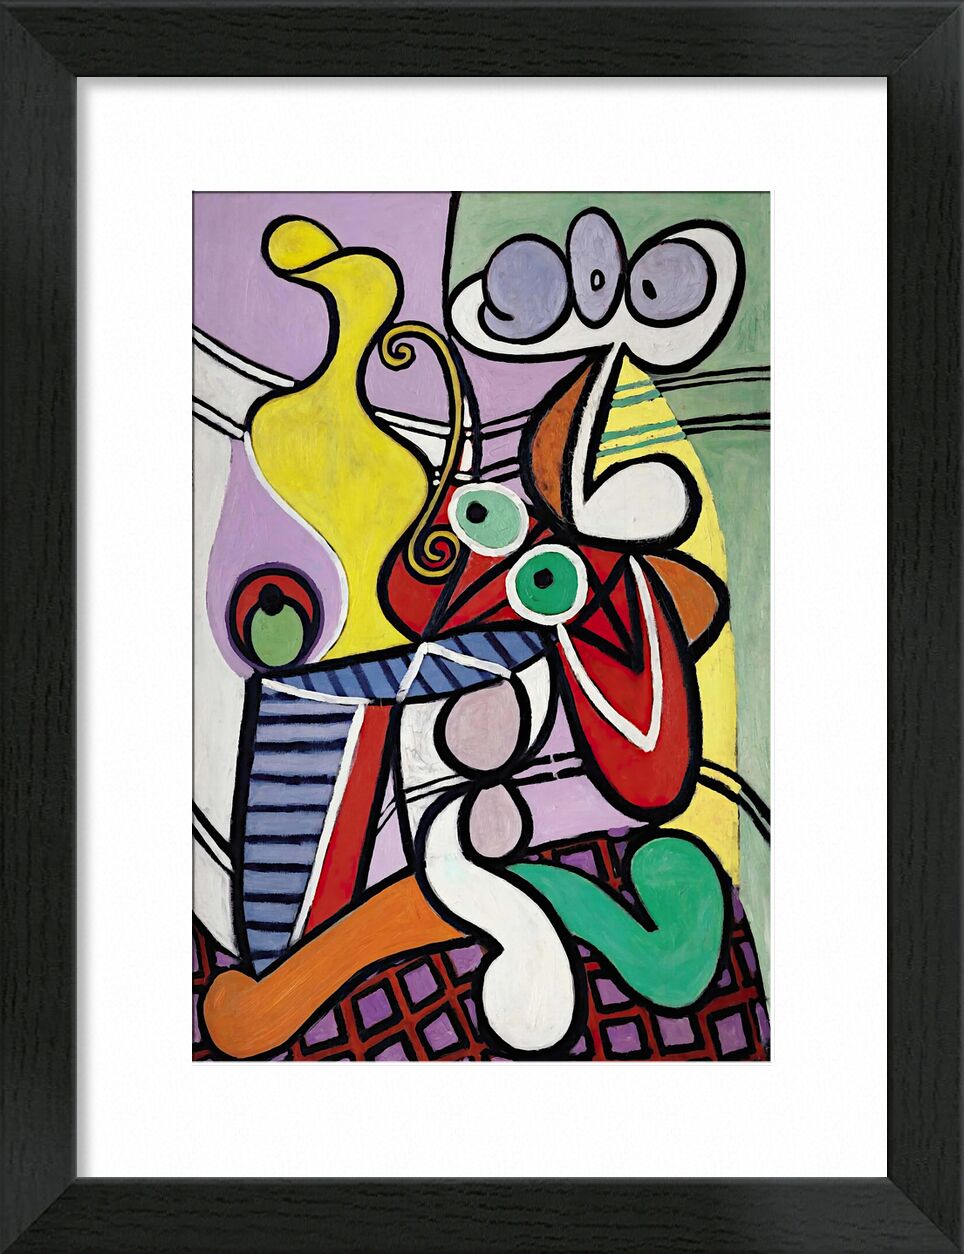 Large Still Life with Pedestal Table - Picasso desde Bellas artes, Prodi Art, mesa pedestal, bodegón, picasso, abstracto, pintura